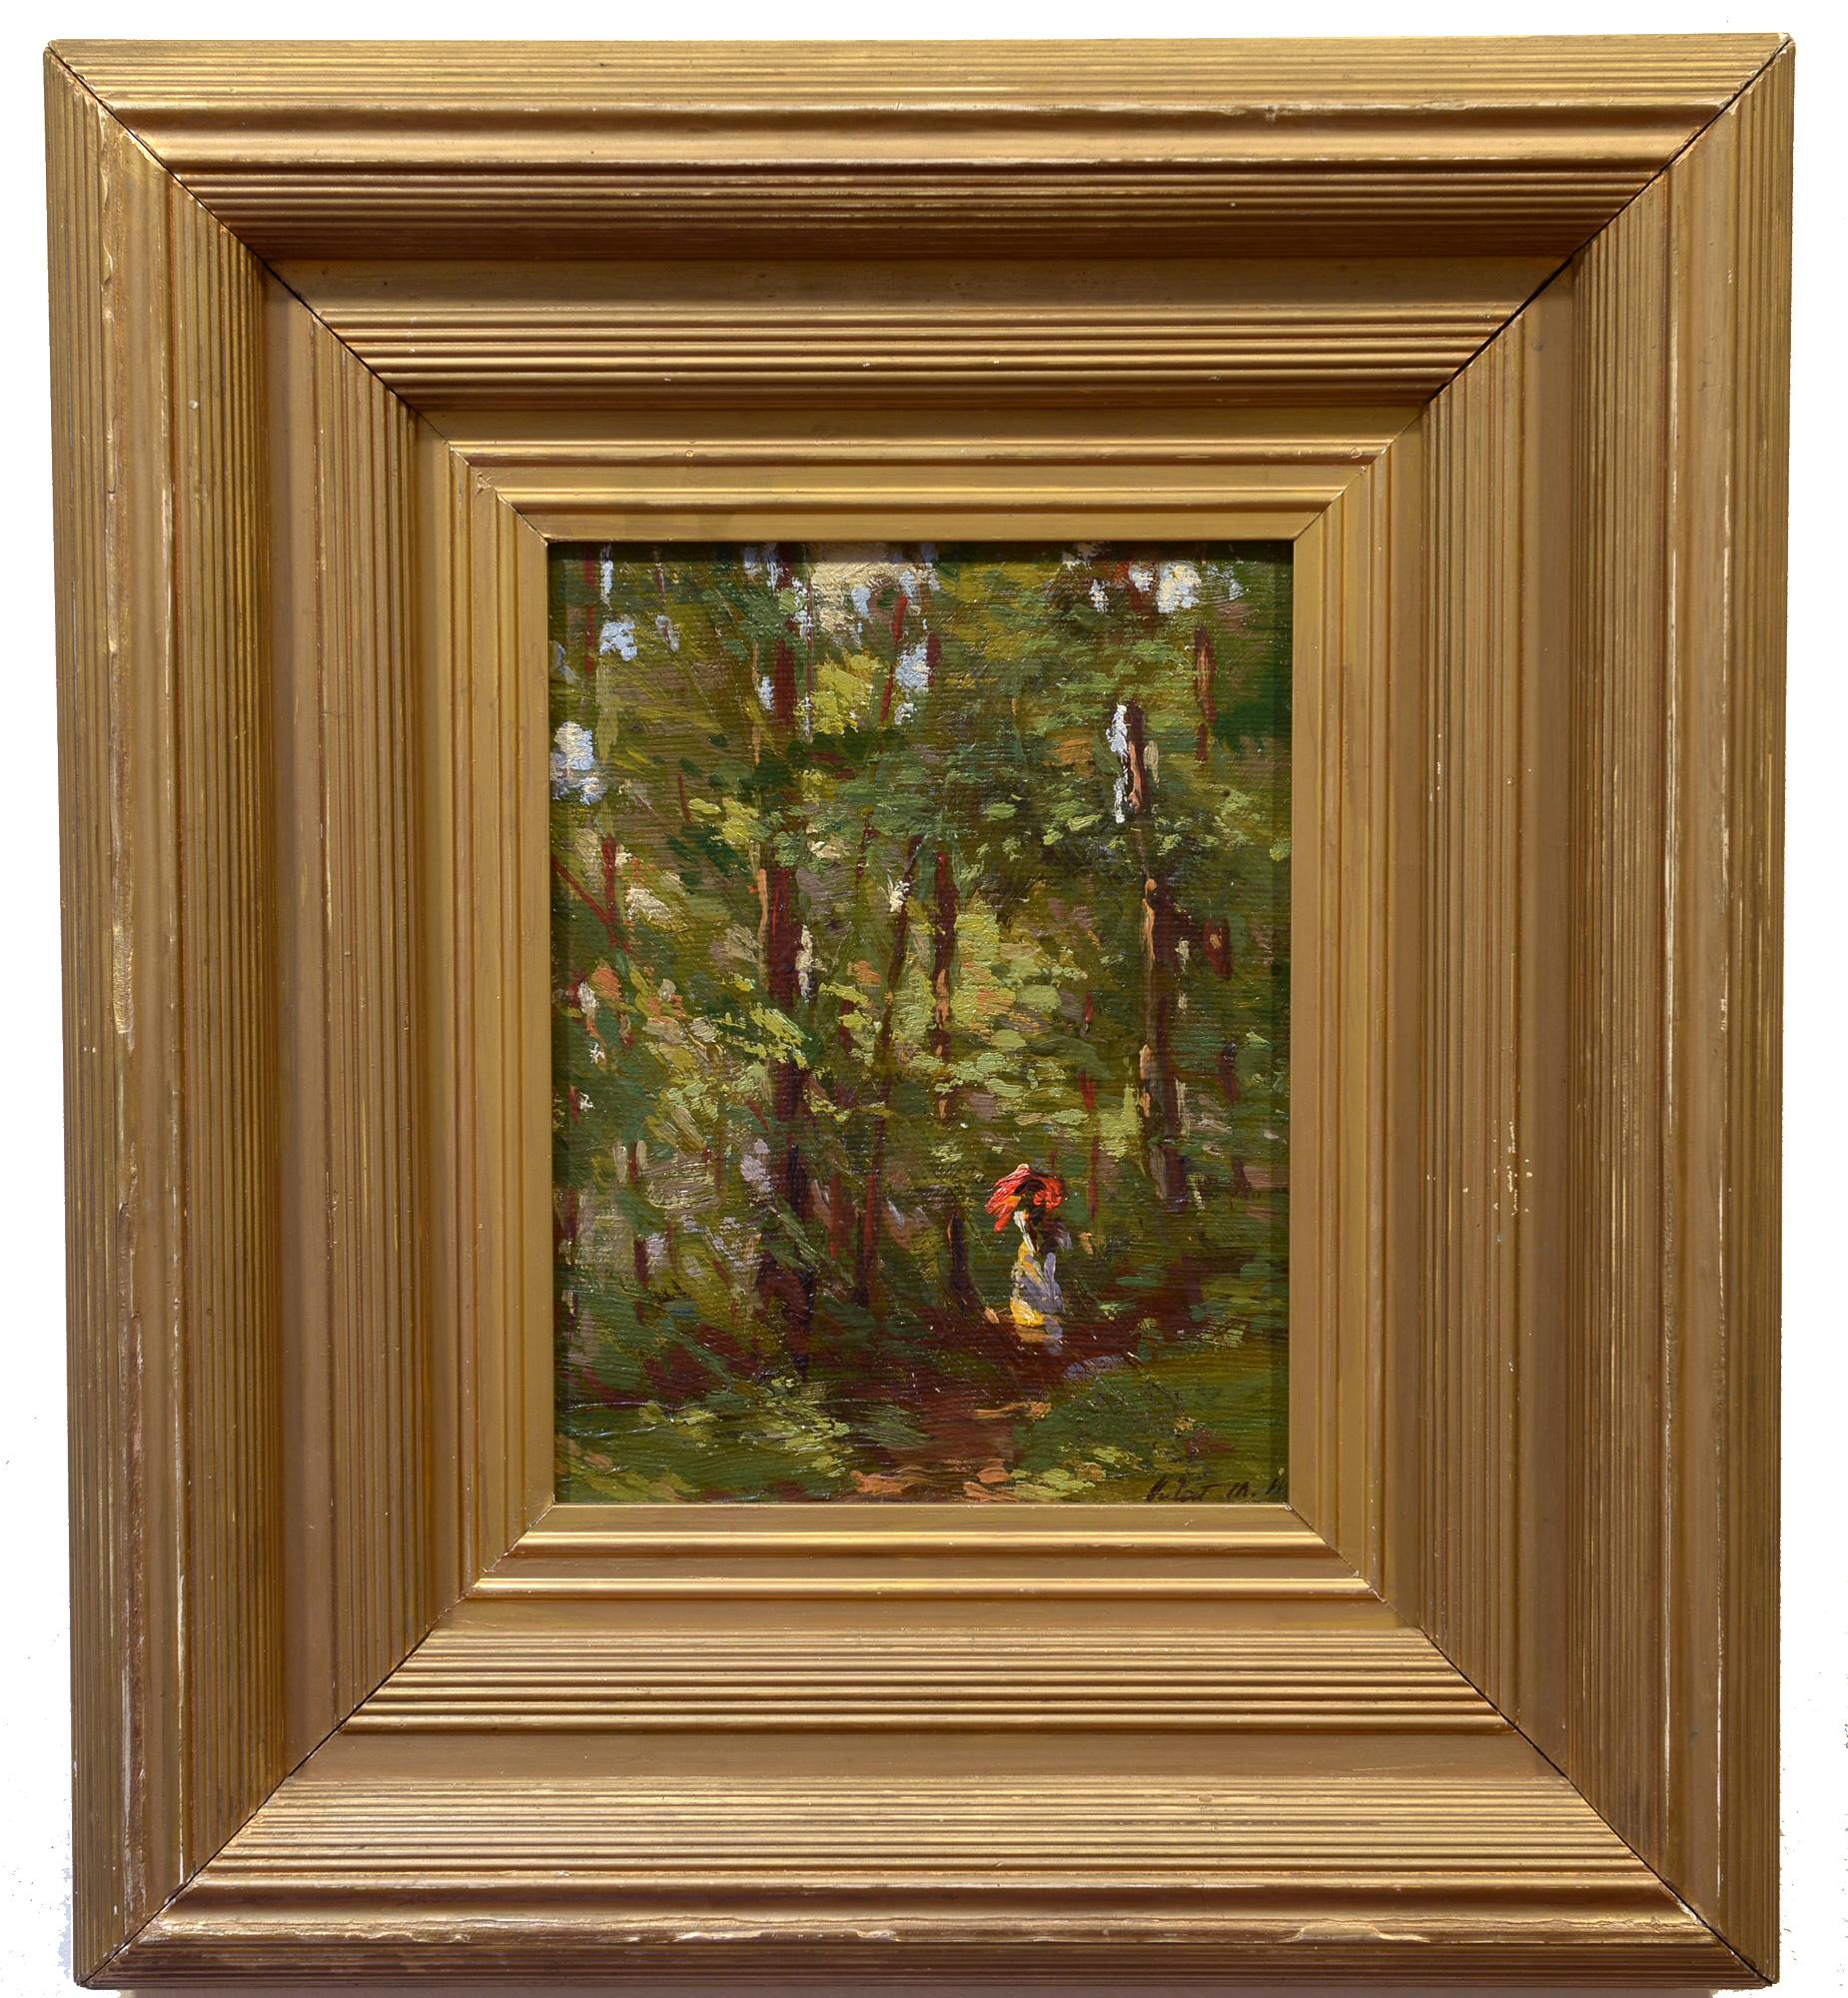 Nachnoon Stroll, amerikanischer Impressionist, Figur auf Waldweg, Landschaft – Painting von Juliet M. White